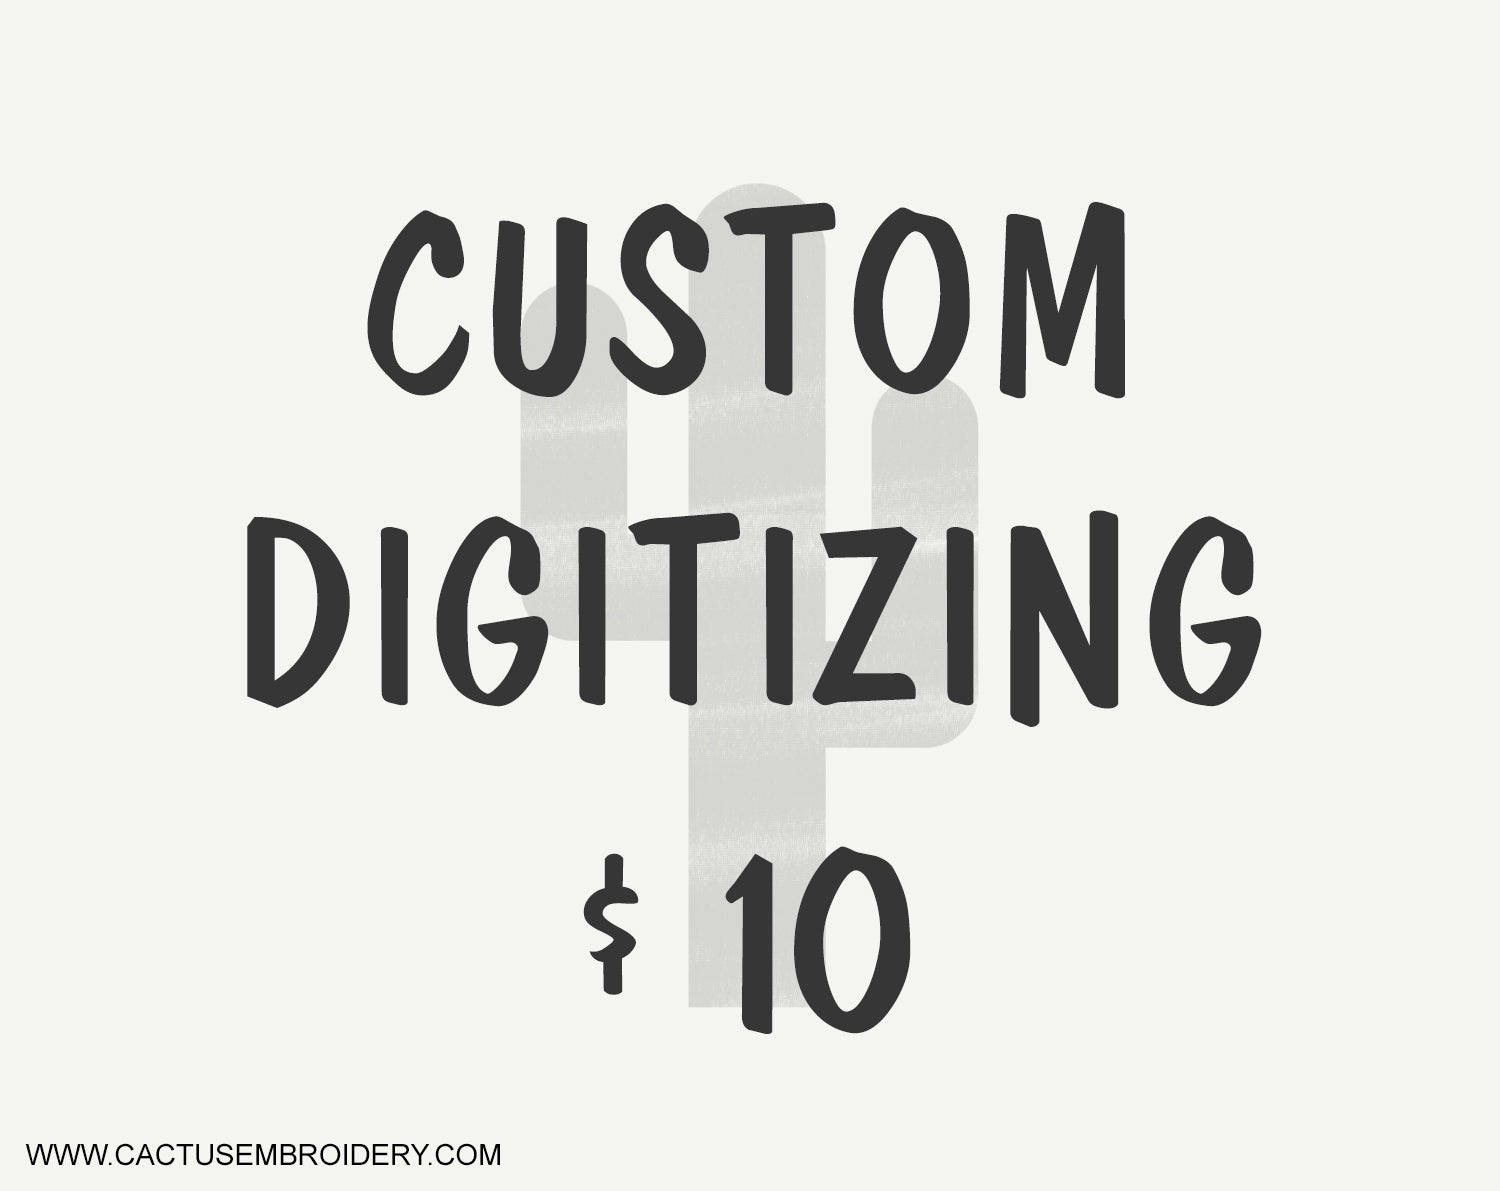 Custom Digitizing, Your logo digitized $10